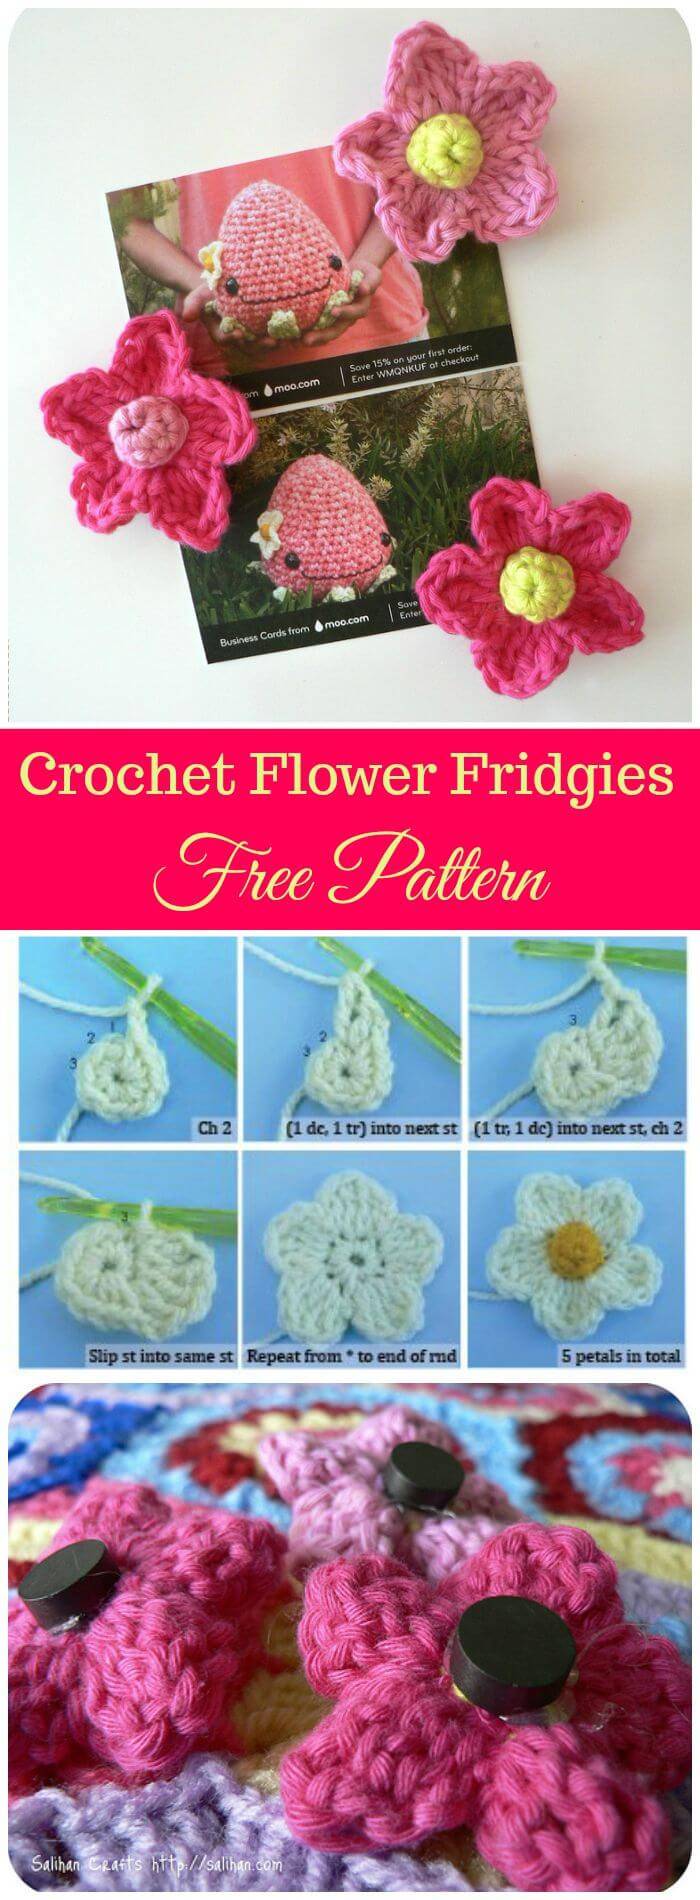 DIY Crochet Flower Fridgies Free Pattern, Free fast easy crochet patterns for beautiful flowers!